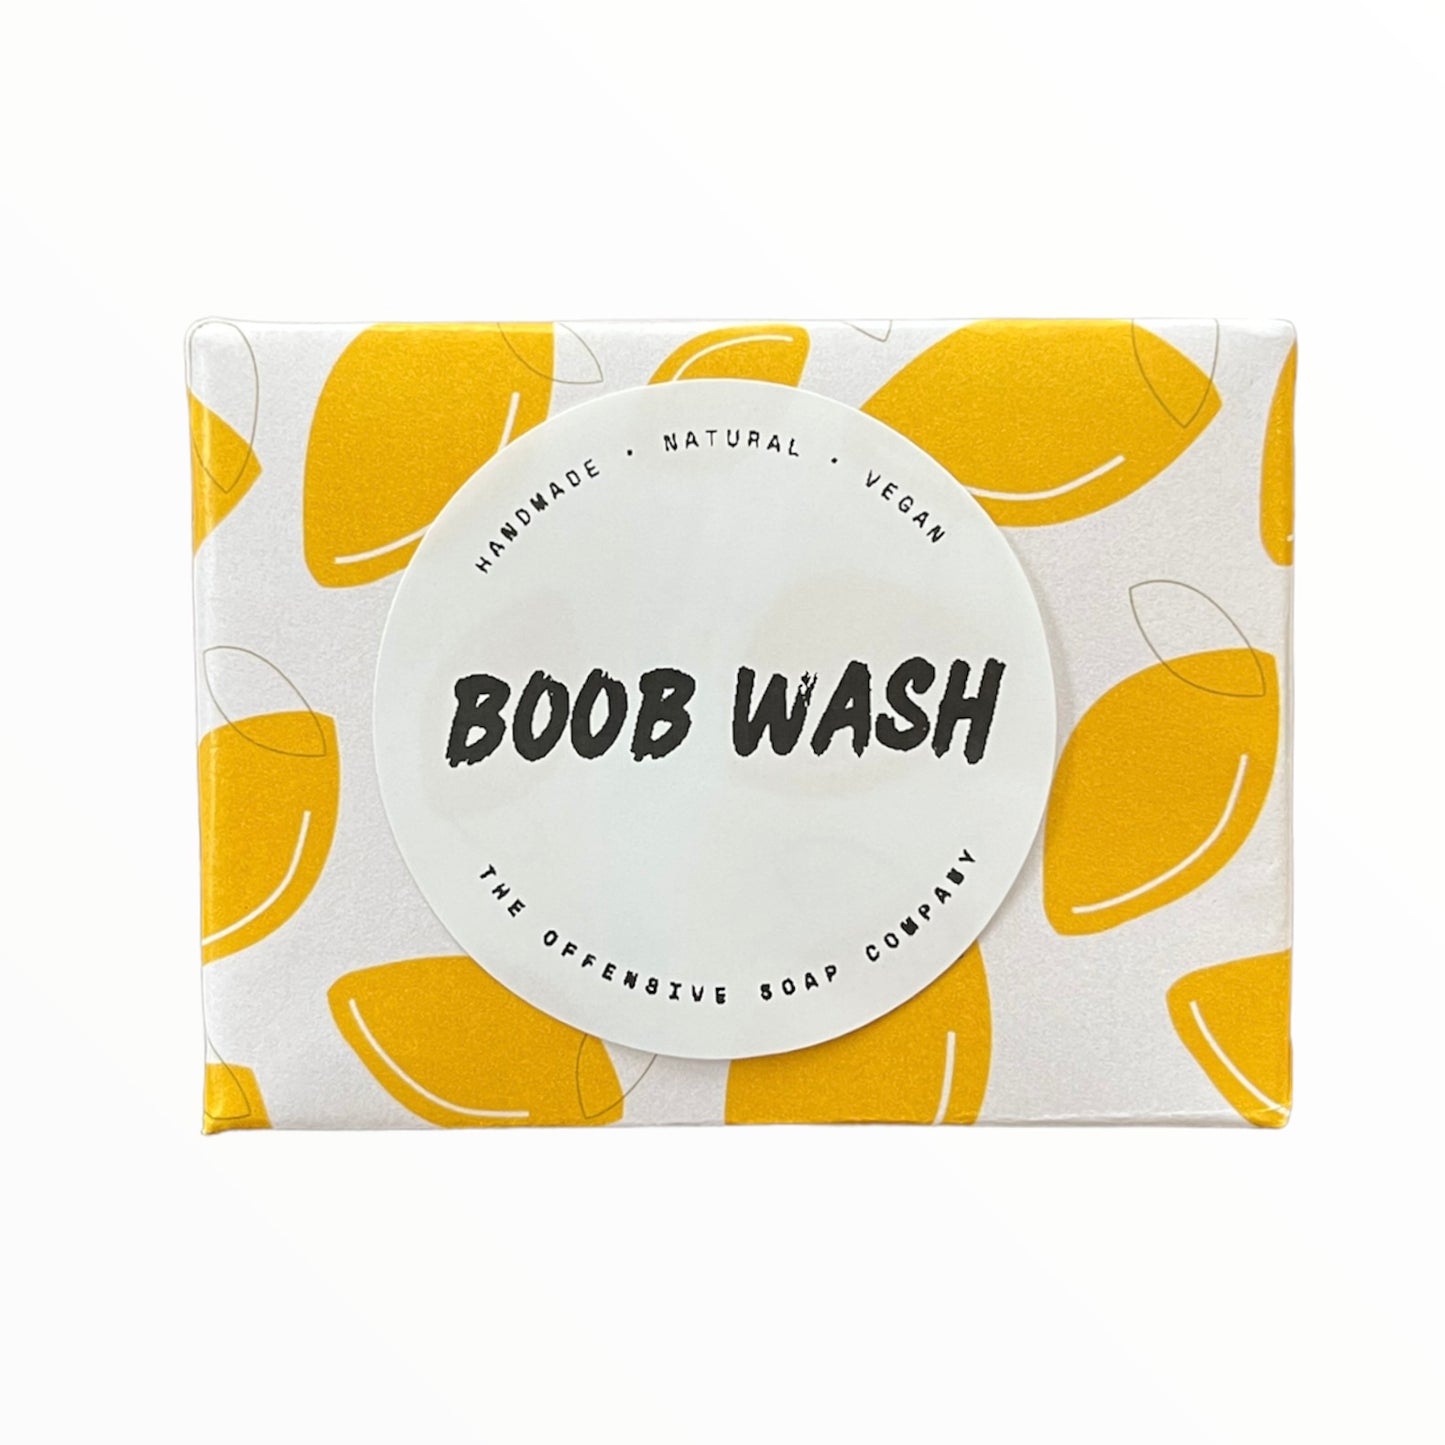 Boob Wash Offensive Soap Bar